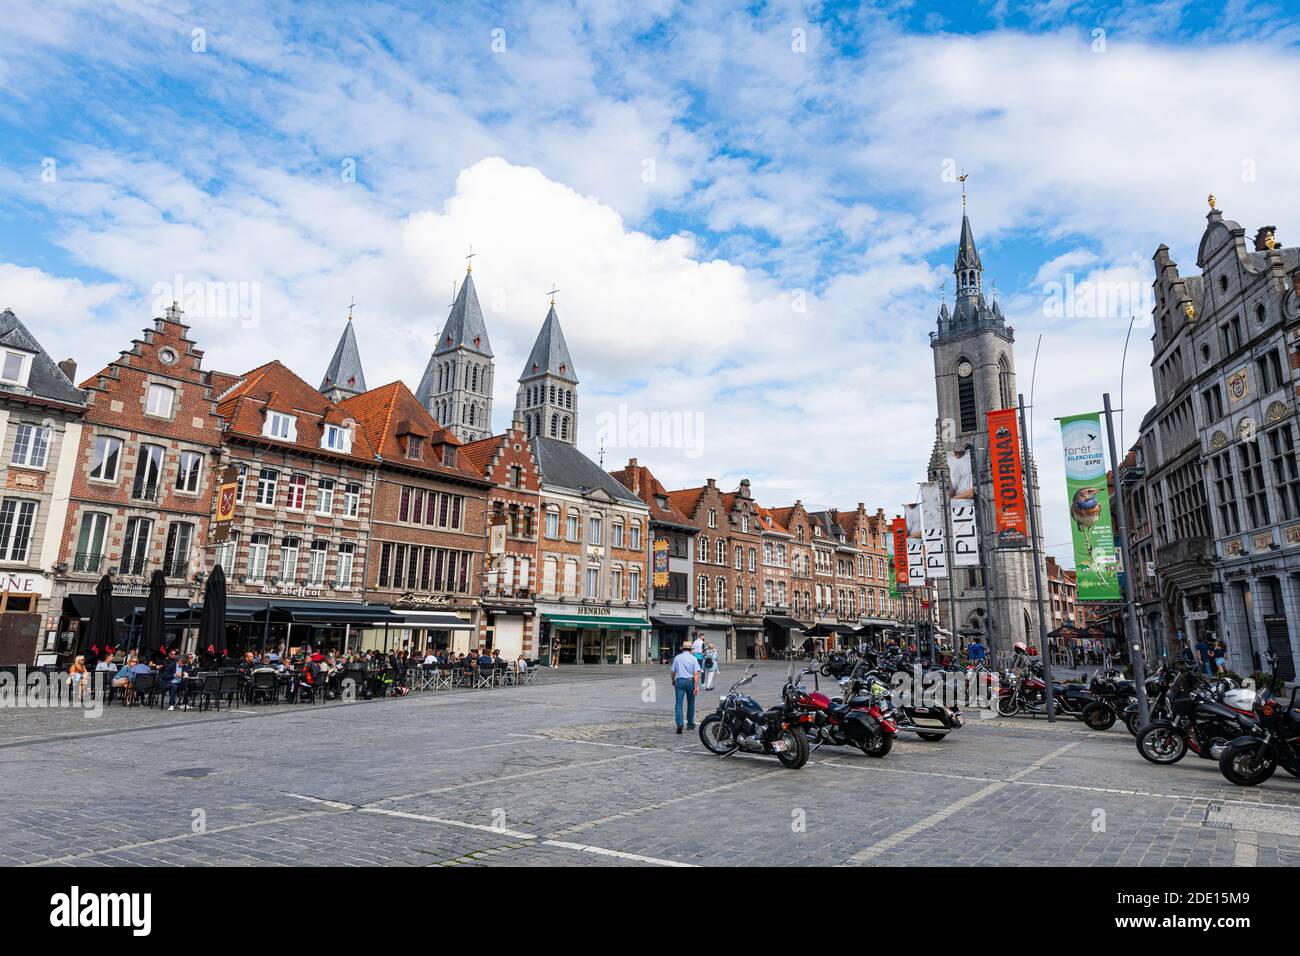 Place du marché et cathédrale de Tournai, site classé au patrimoine mondial de l'UNESCO, Tournai, Belgique, Europe Banque D'Images